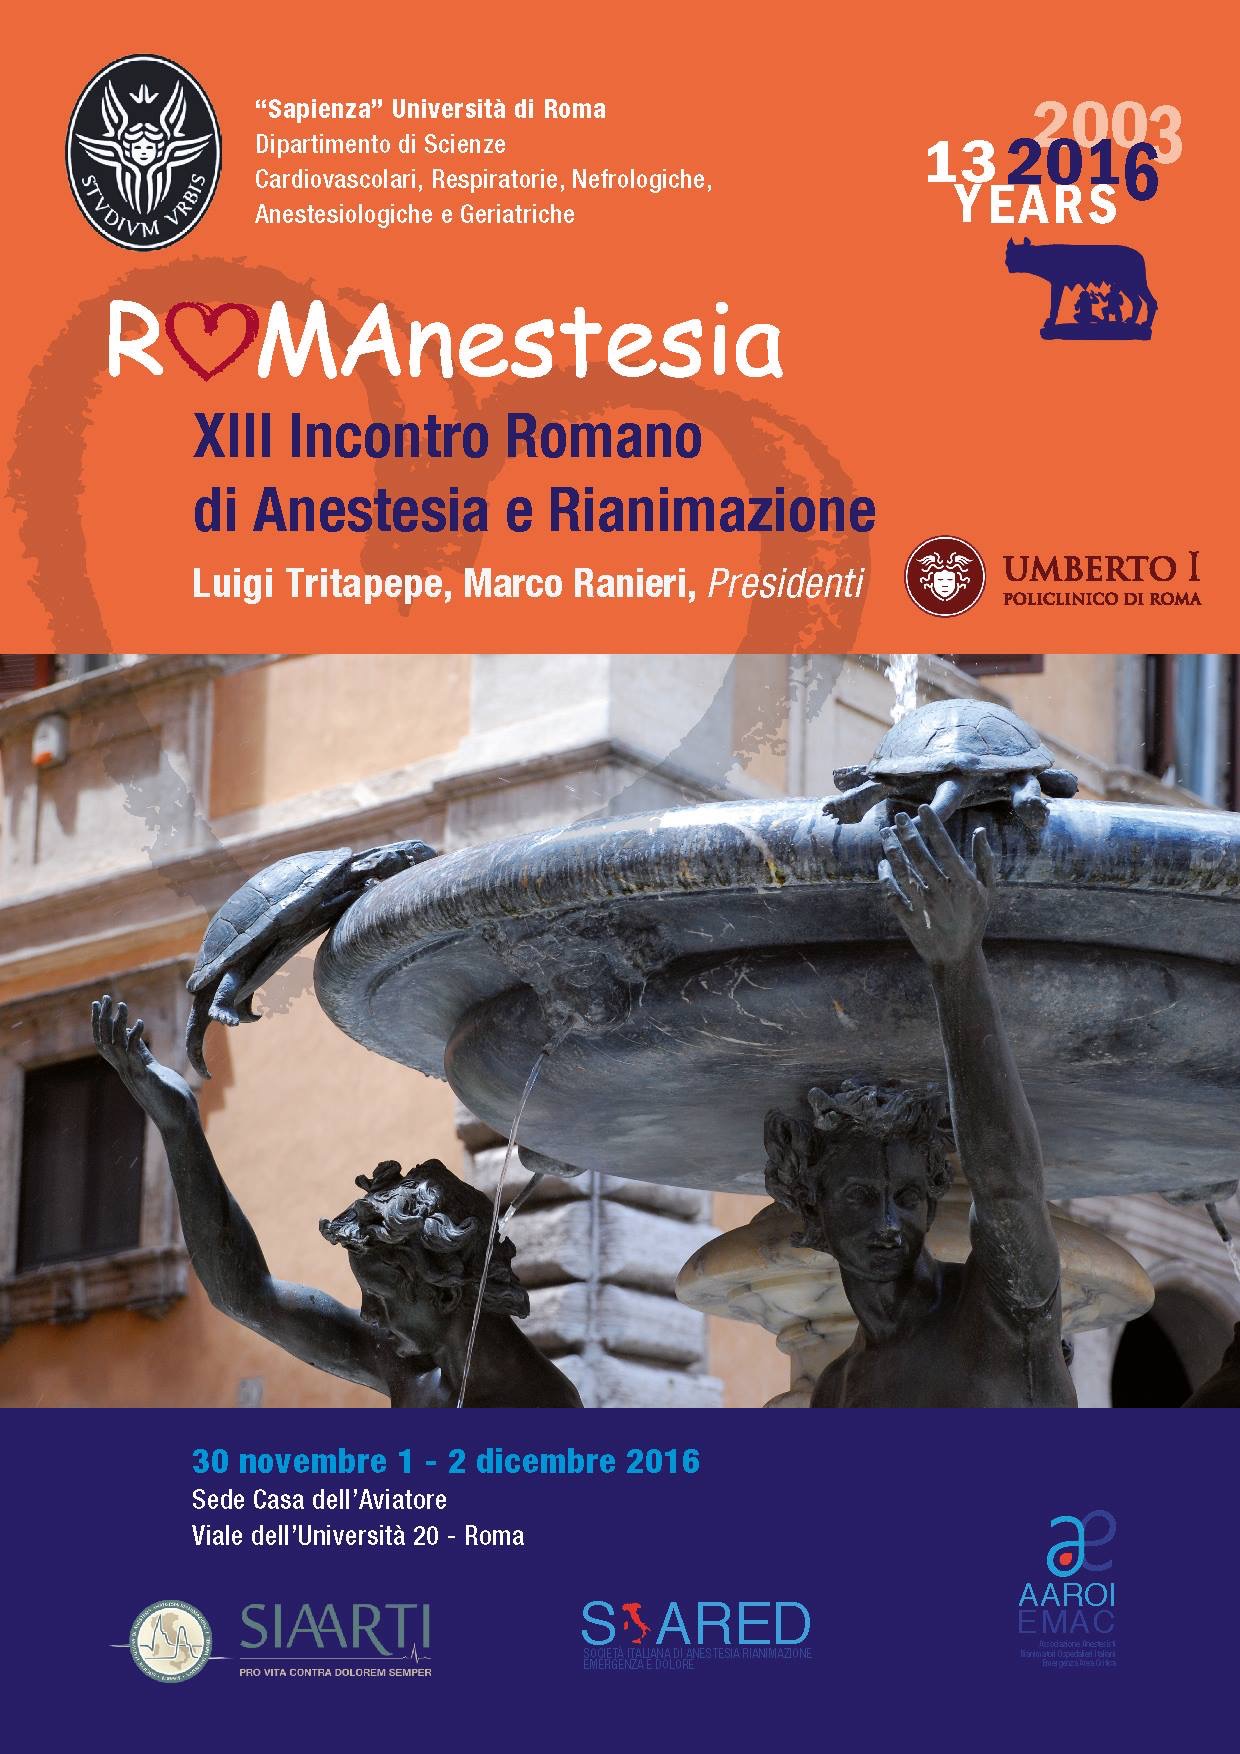 RomAnestesia 2016 , Roma, Casa dell’Aviatore, 30/11_1-2/12/2016